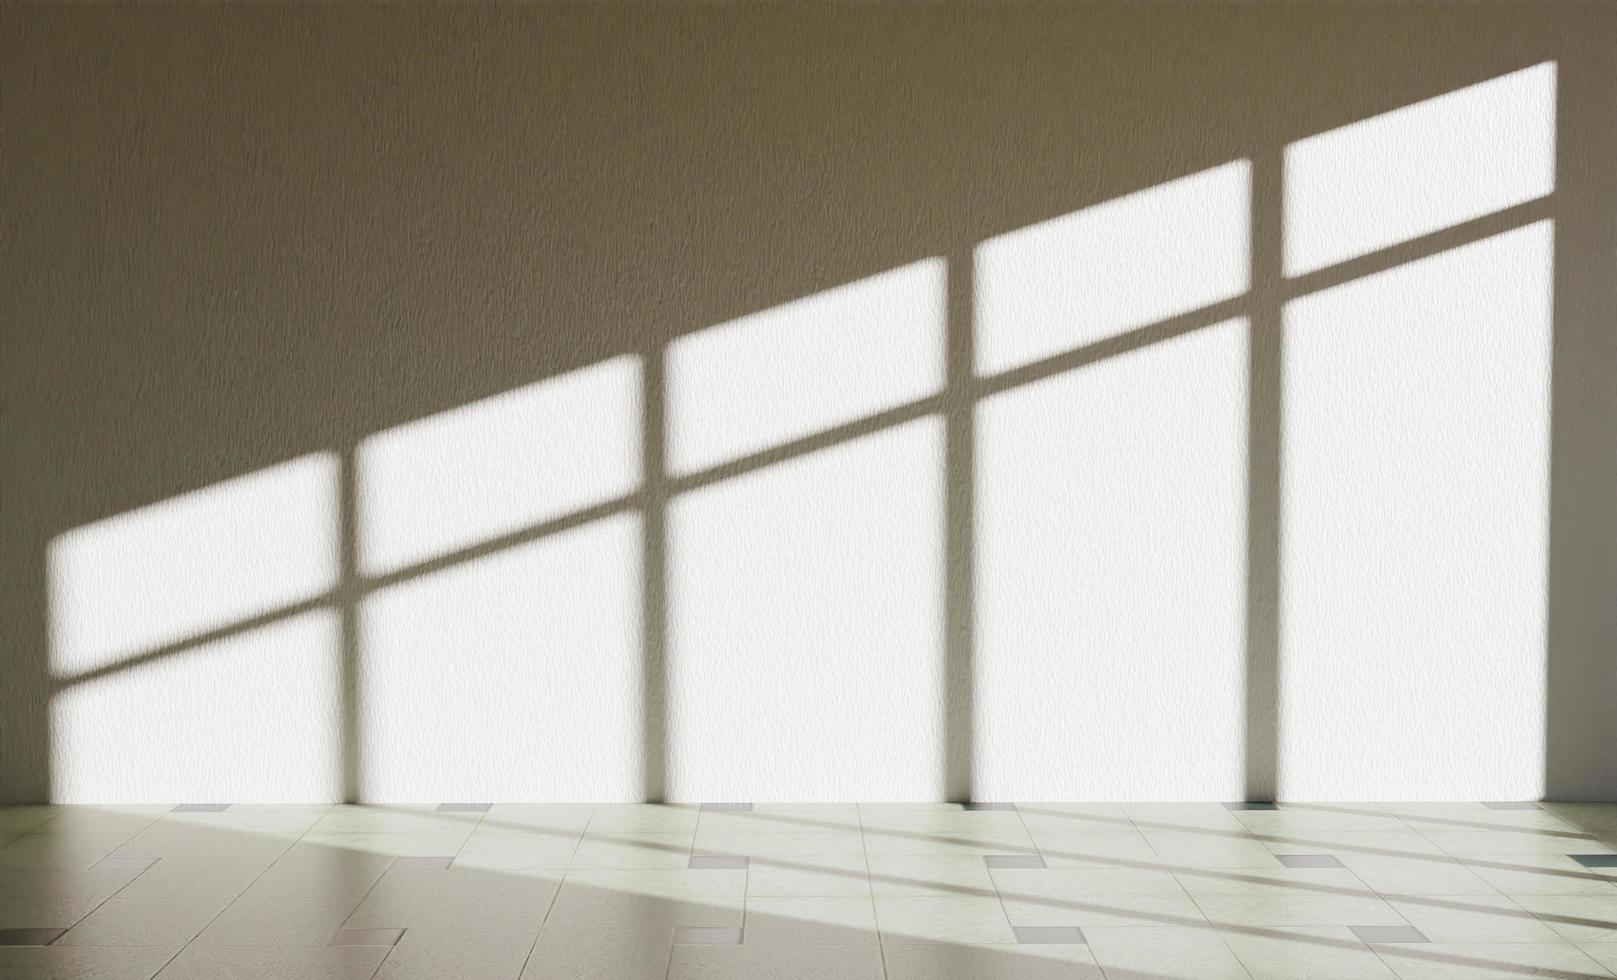 Mur intérieur avec éclairage de fenêtre faisant des ombres dures, rendu 3d photo